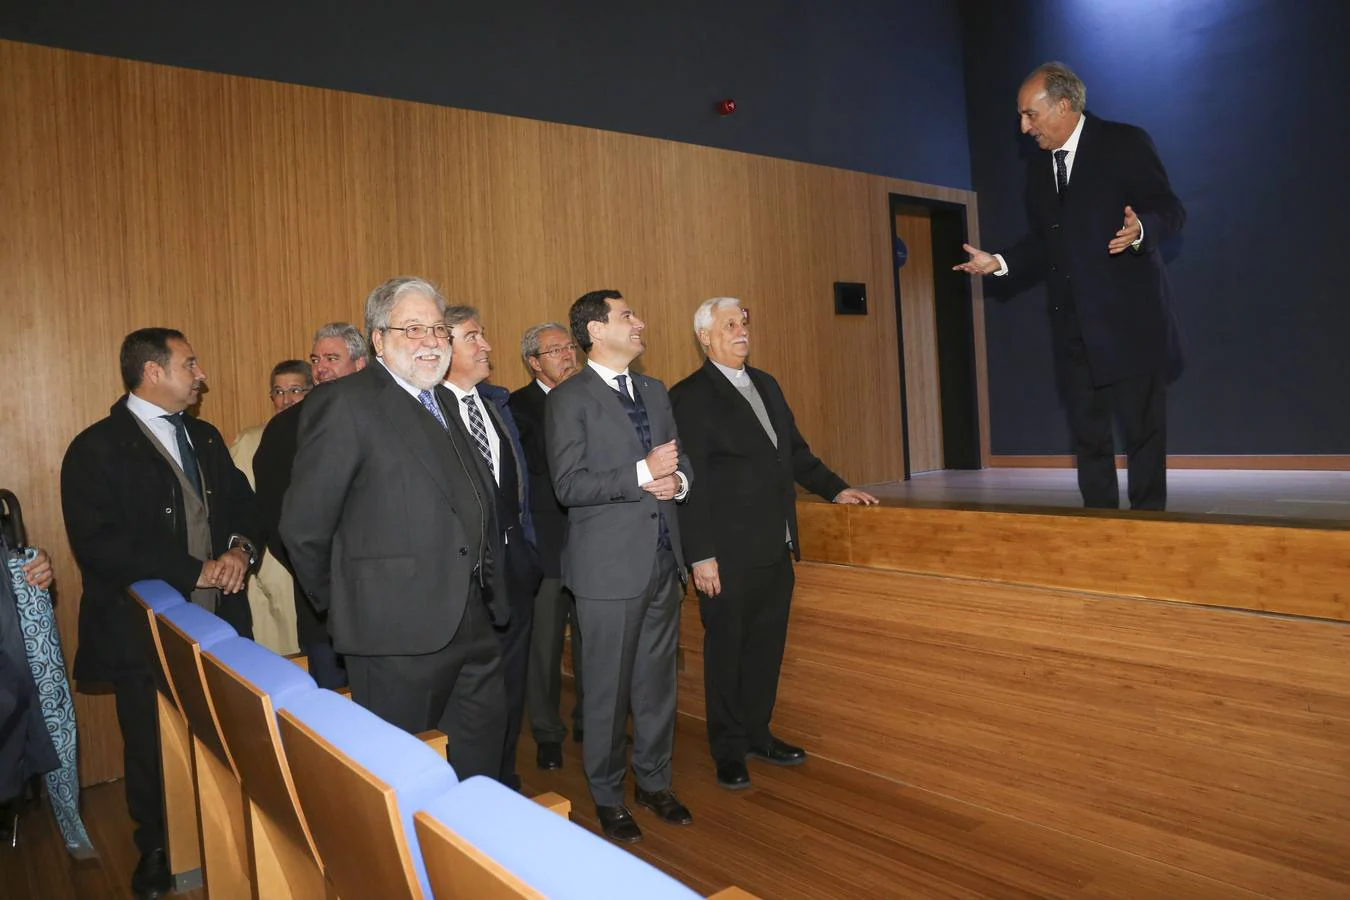 Inauguración del nuevo campus de la Universidad Loyola Andalucía